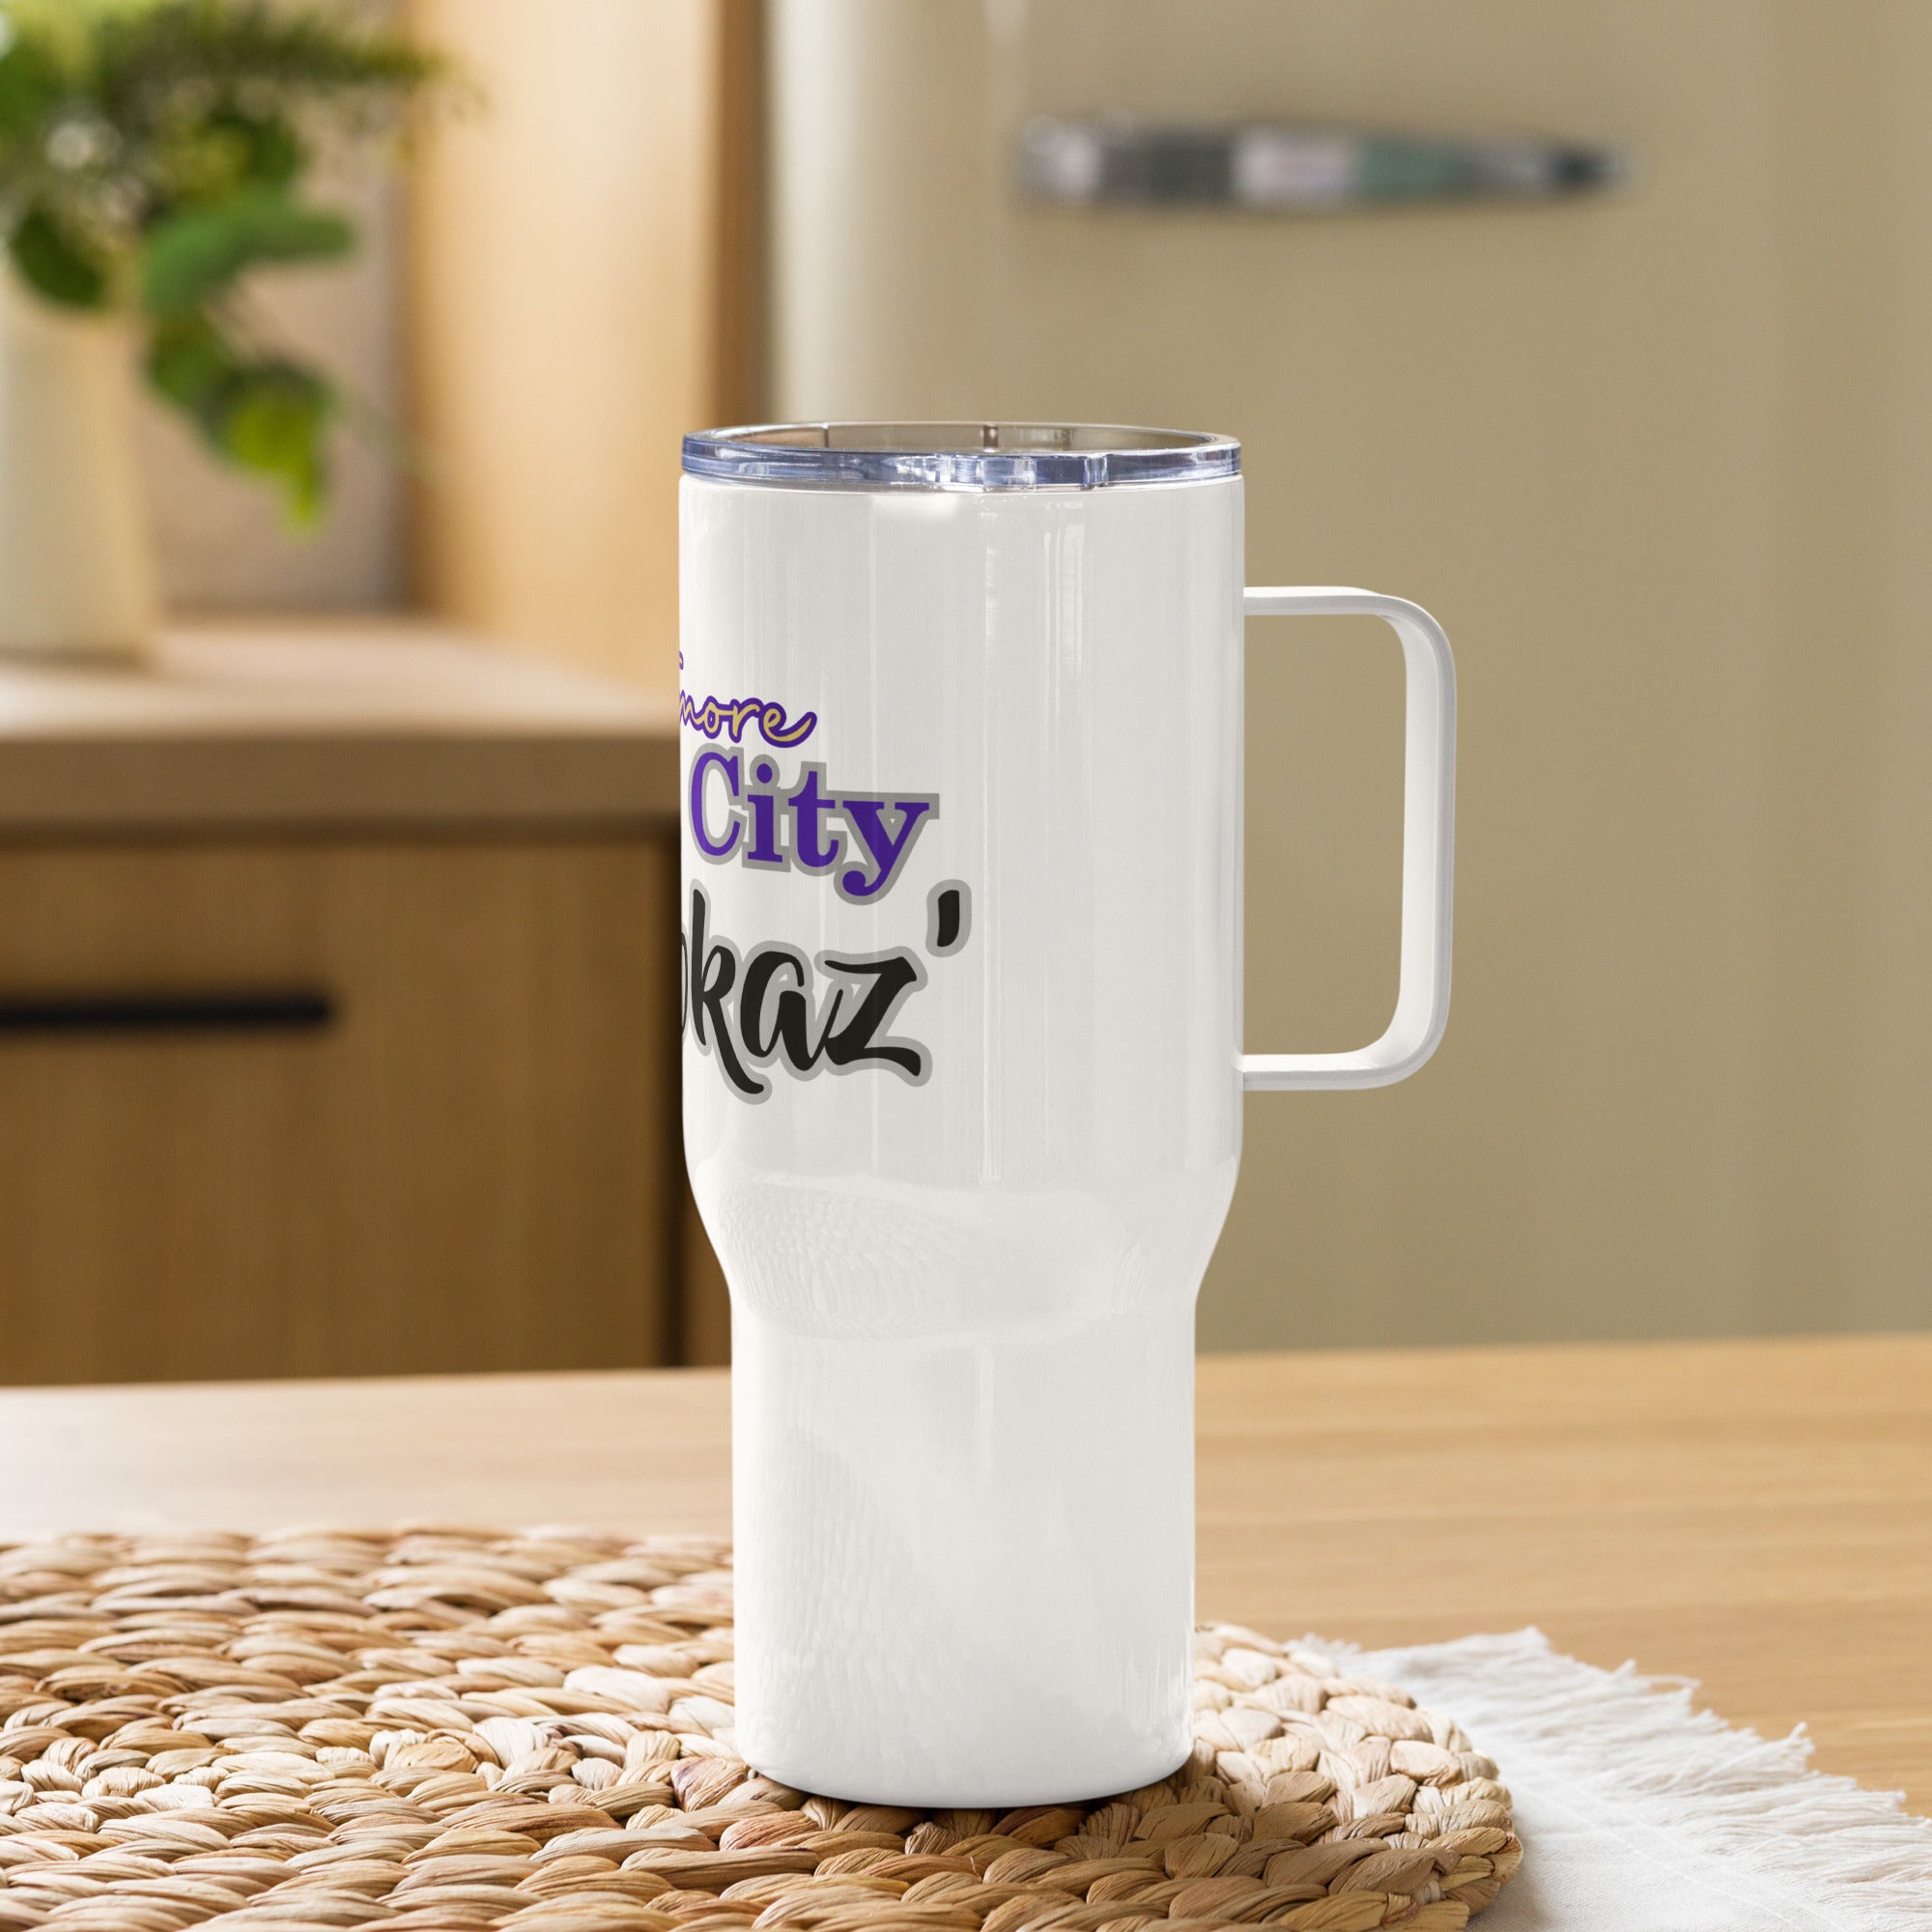 Charm City Smokaz- Travel mug with a handle